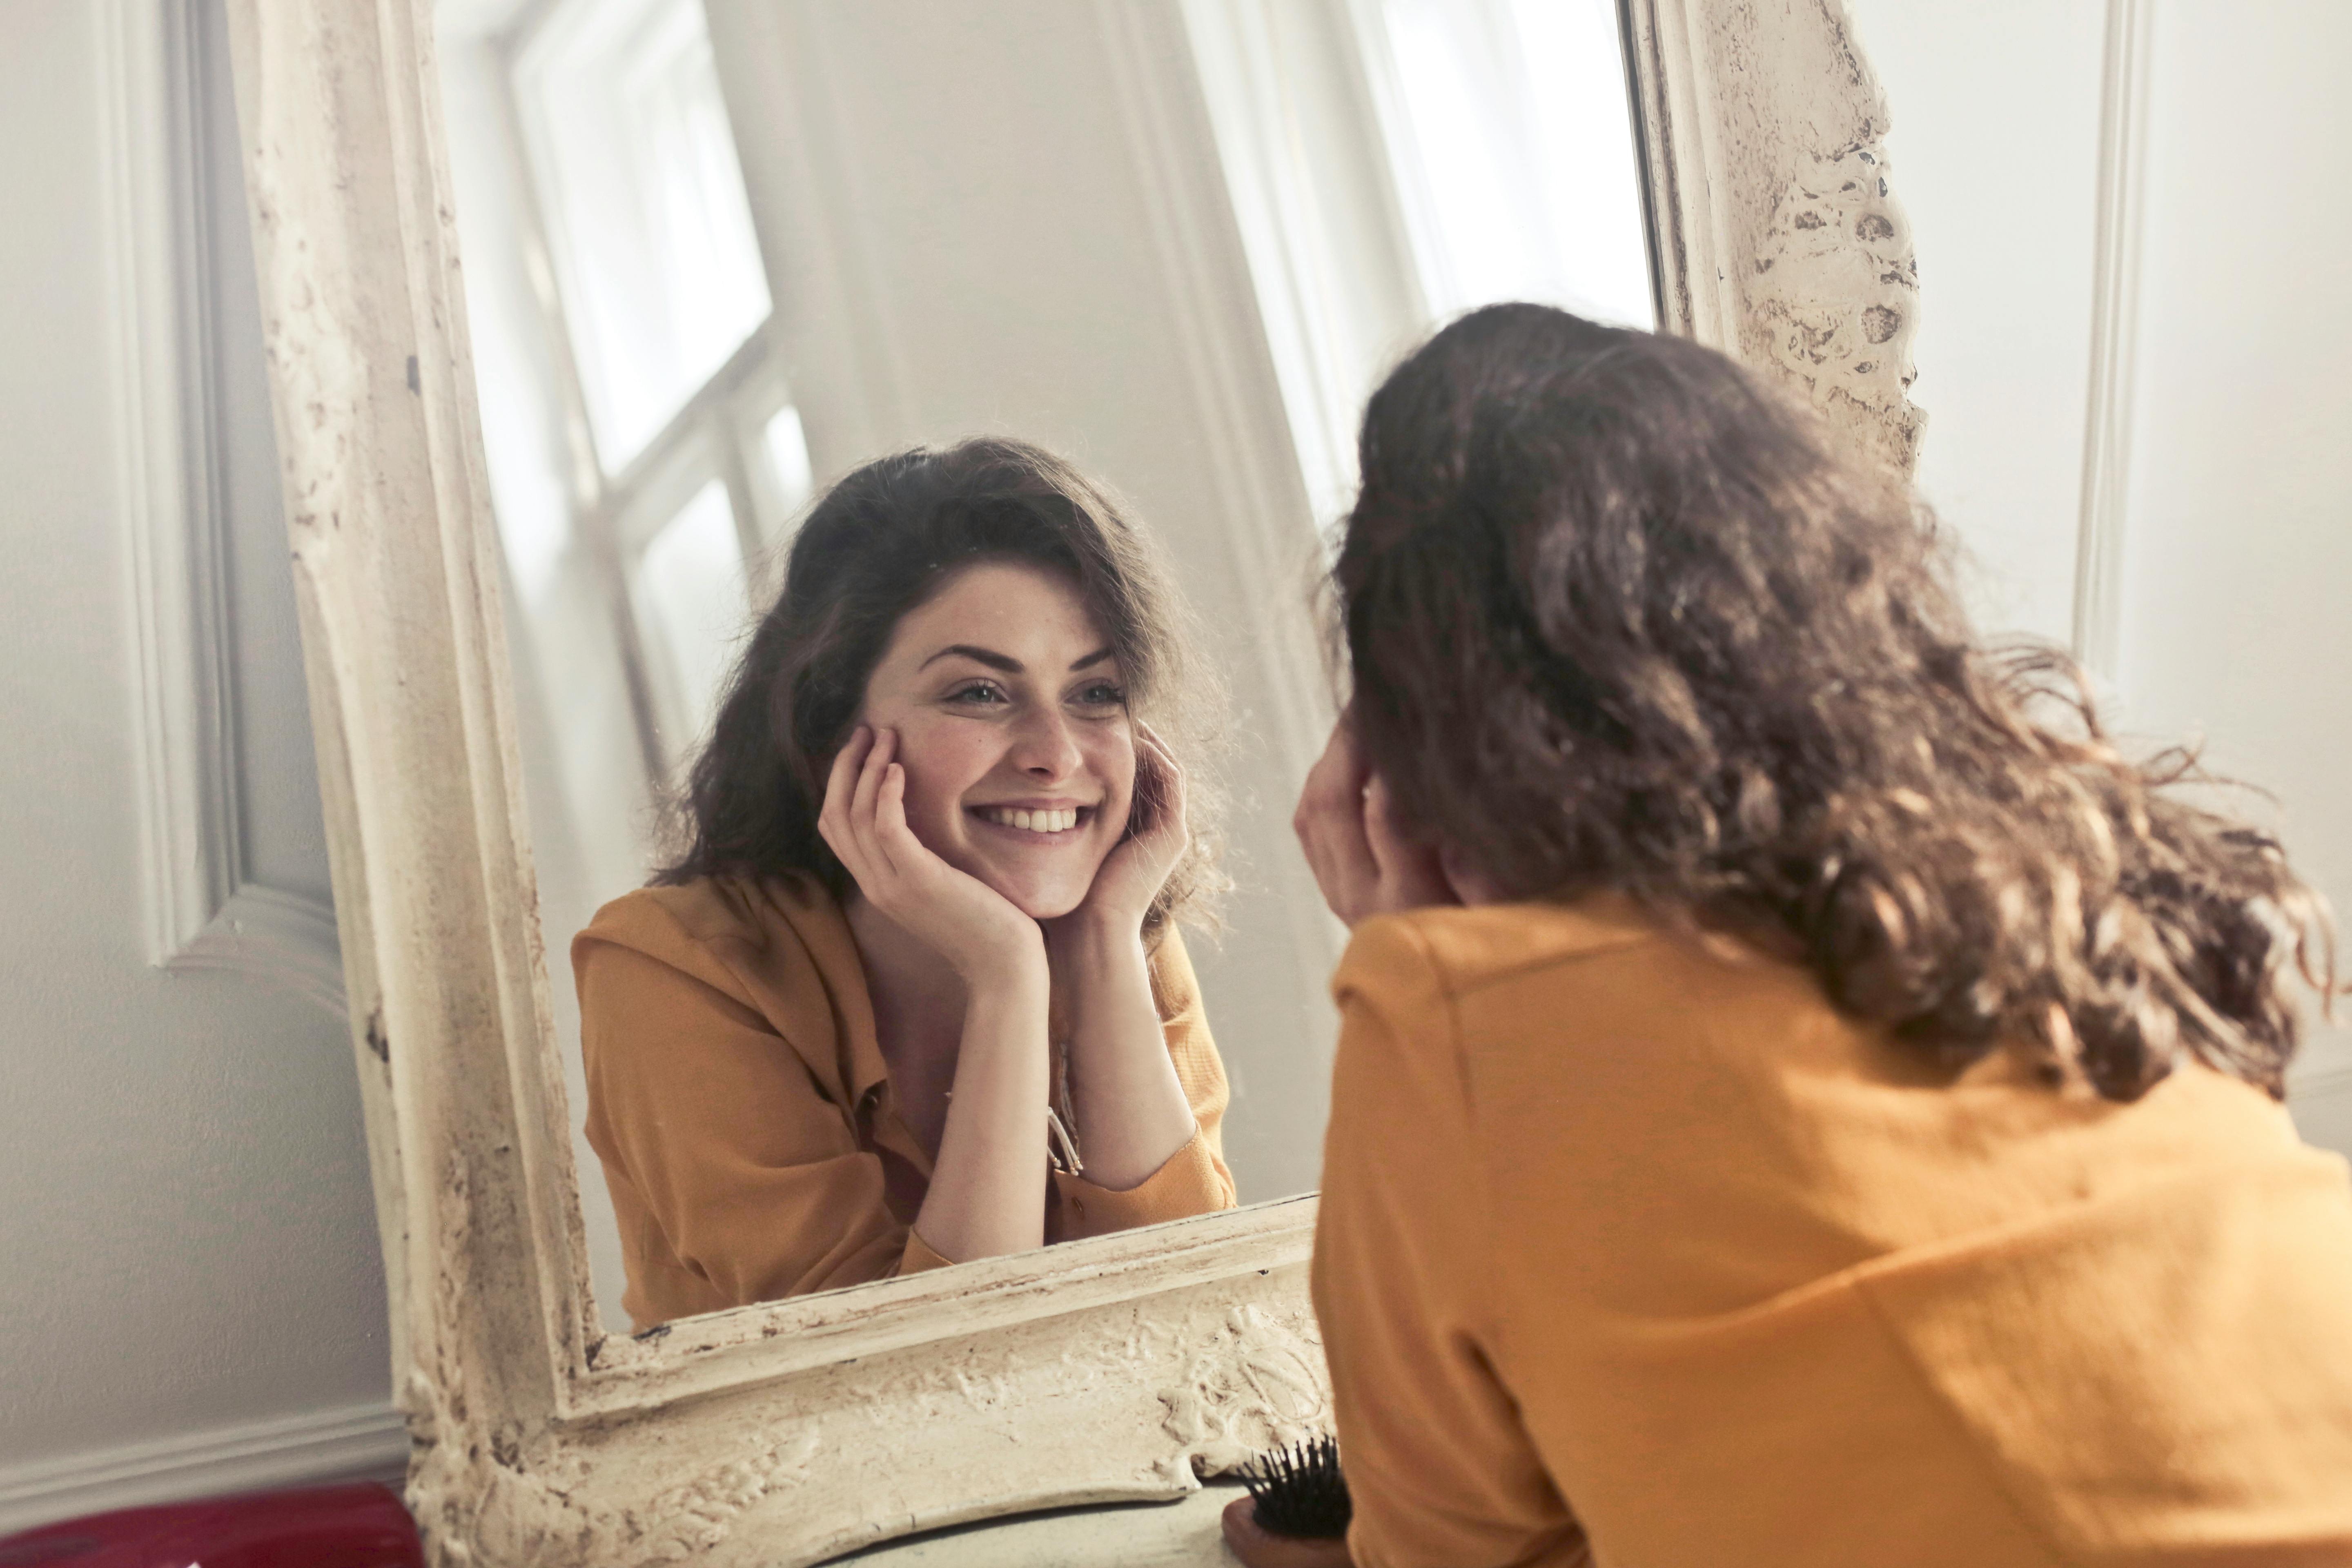 Mujer sonriendo mientras se mira al espejo | Fuente: Pexels